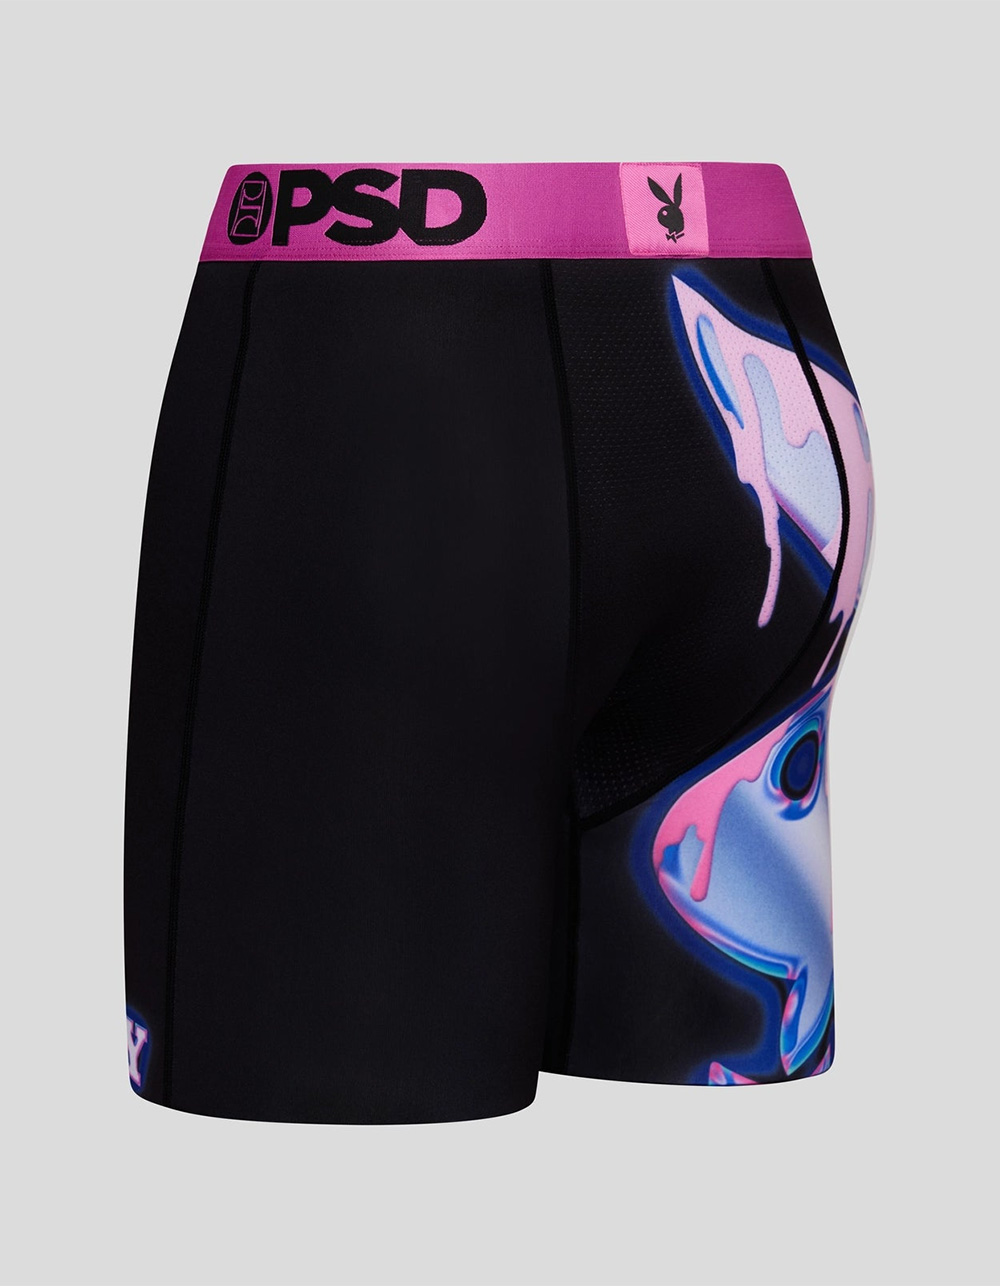 PSD Metallic Rose Boxer Brief Underwear